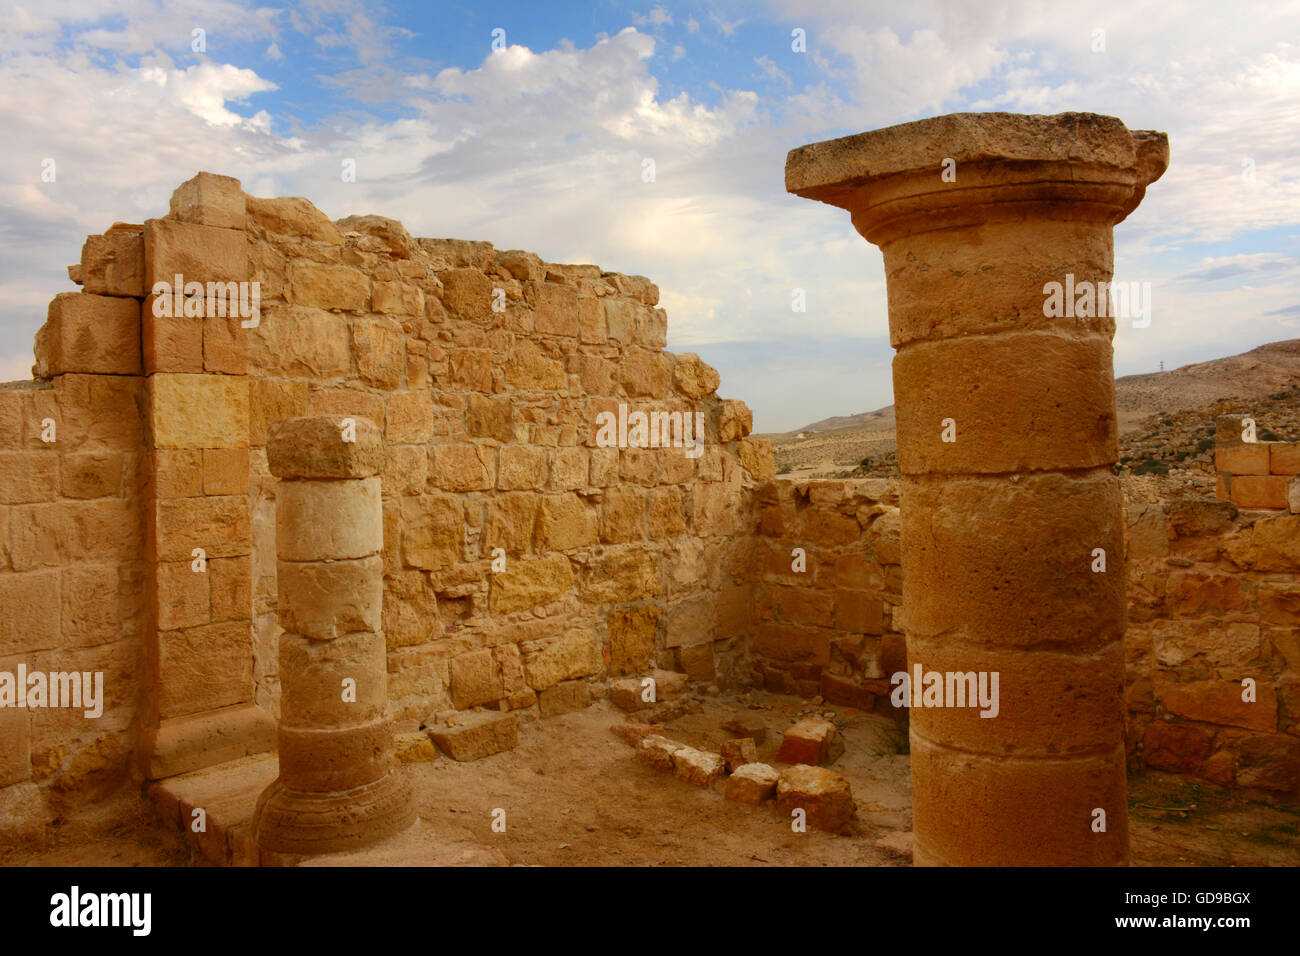 Mamshit ruins, Israel Stock Photo